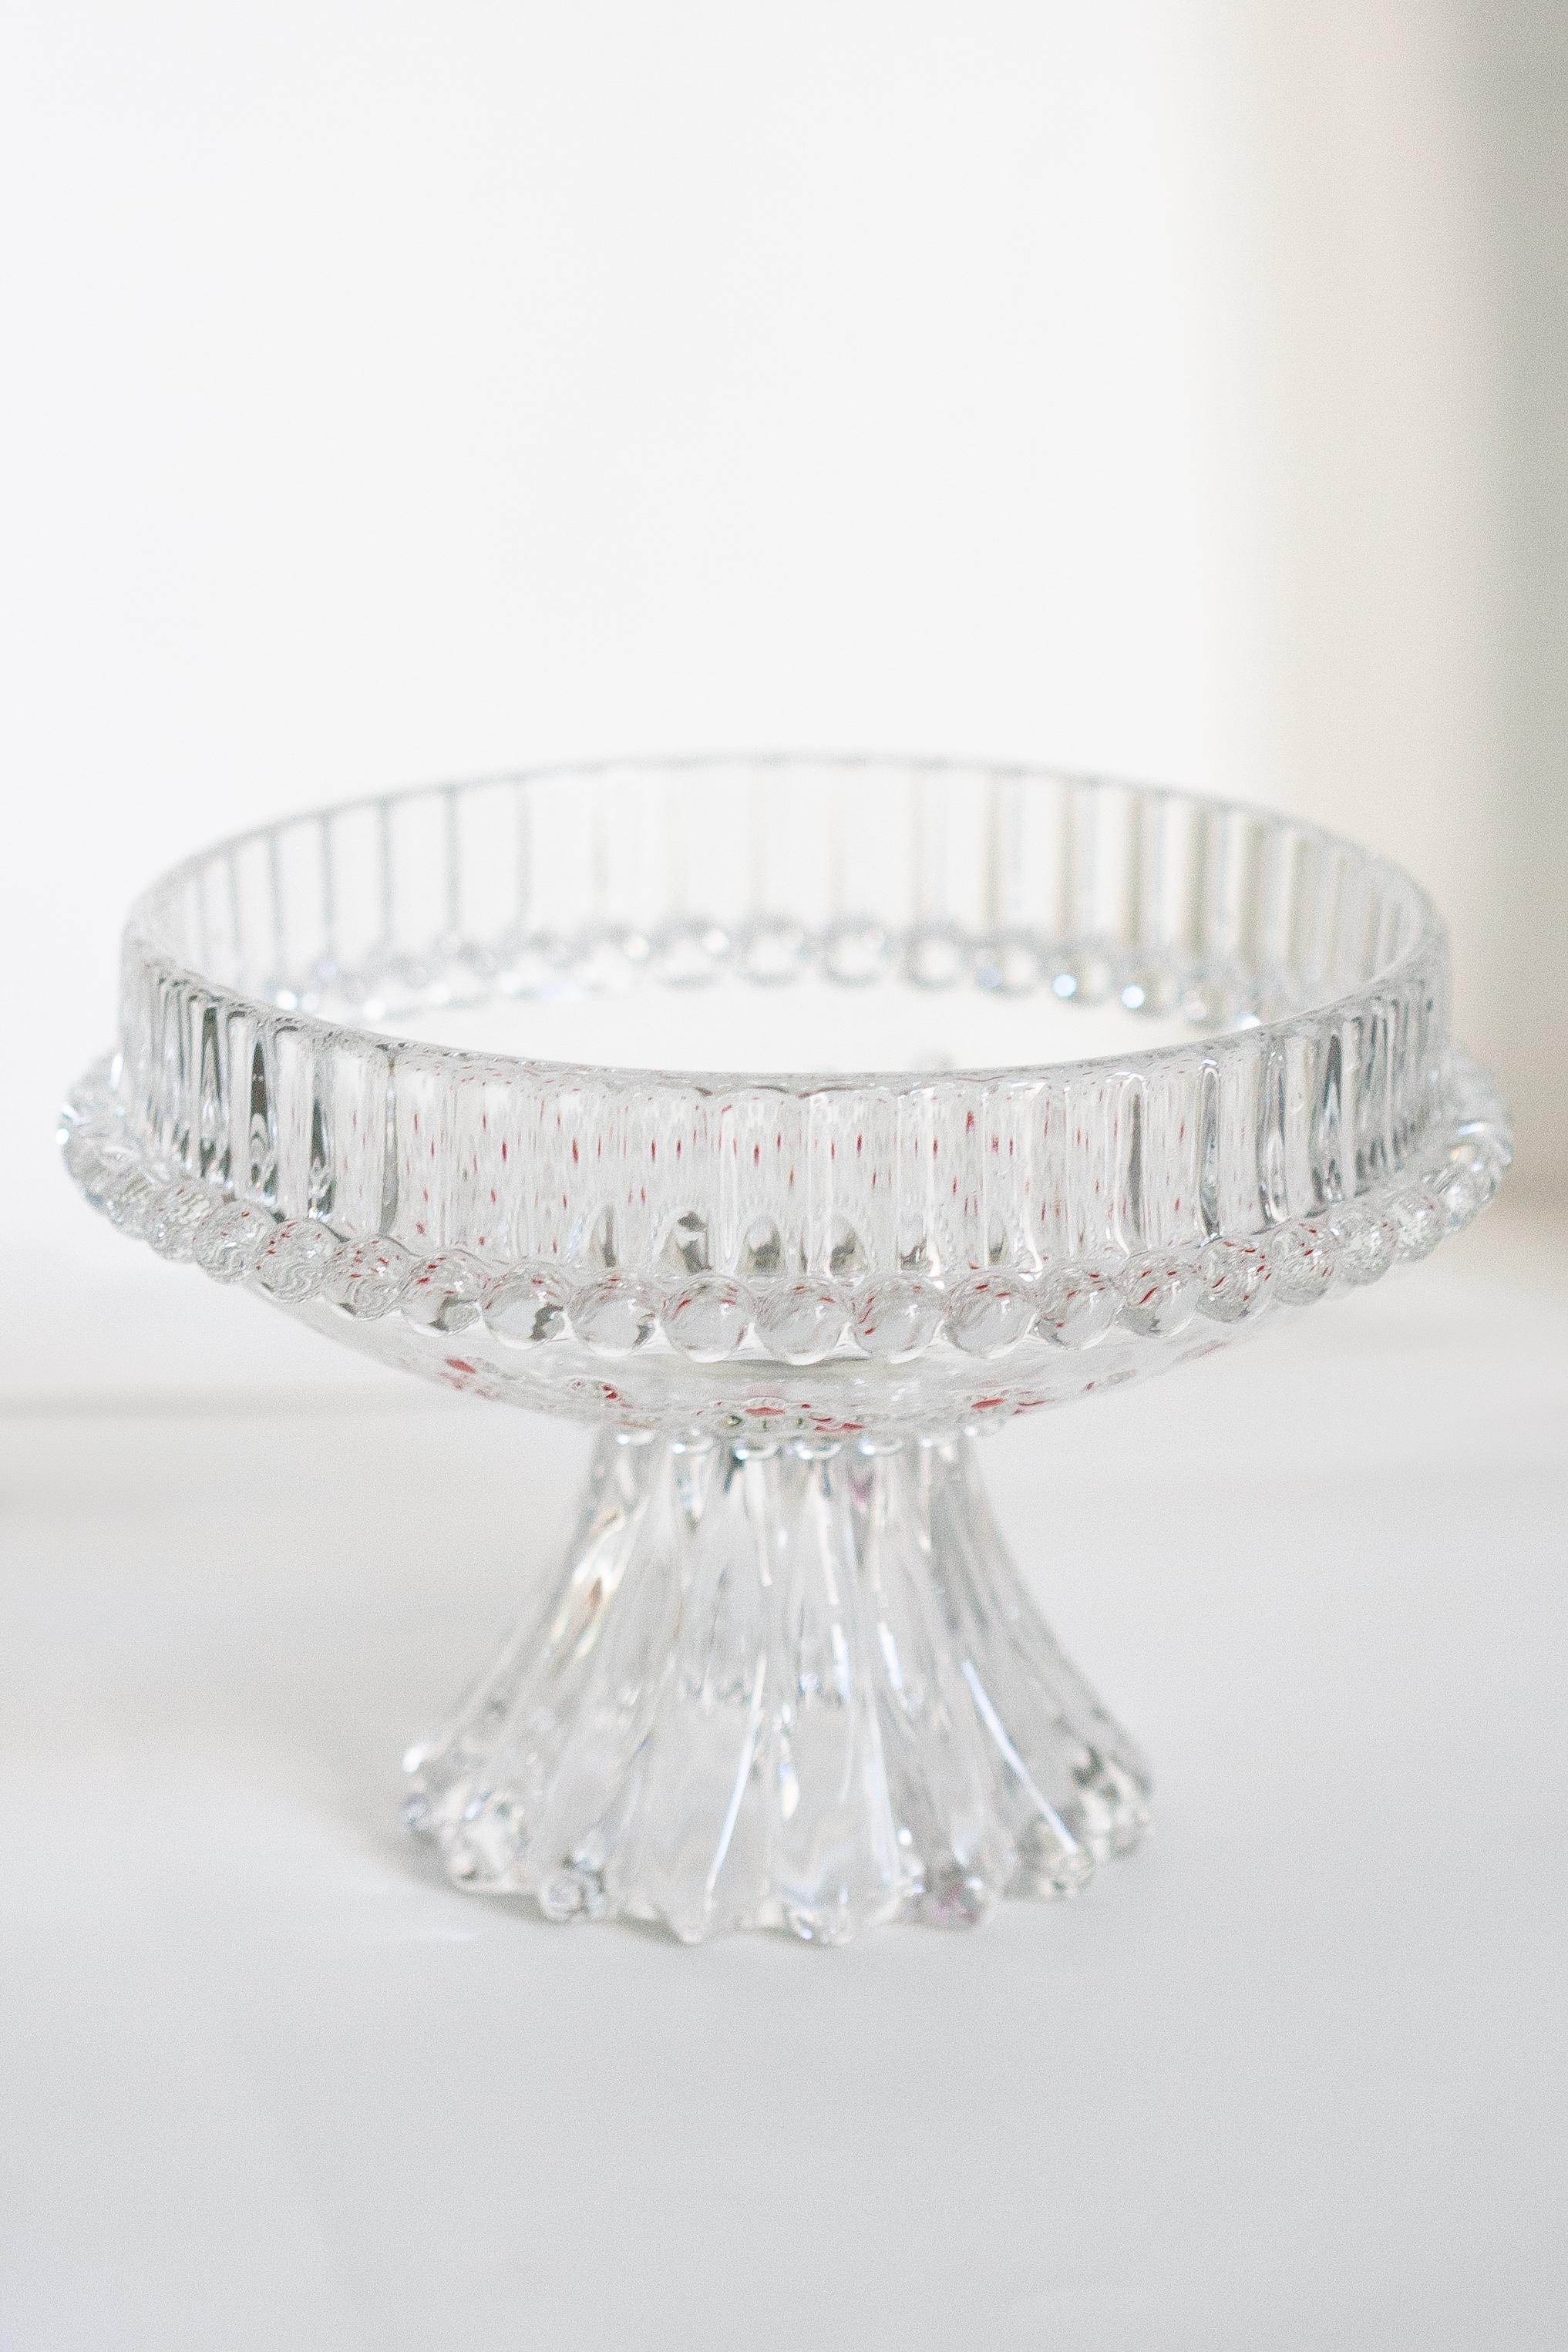 Dekorative transparente Kristallglasplatte aus Italien. Teller ist in sehr gutem Vintage-Zustand, keine Schäden oder Risse. Original Glas. Ein schönes Stück für jedes Interieur! Nur ein einziges Stück.